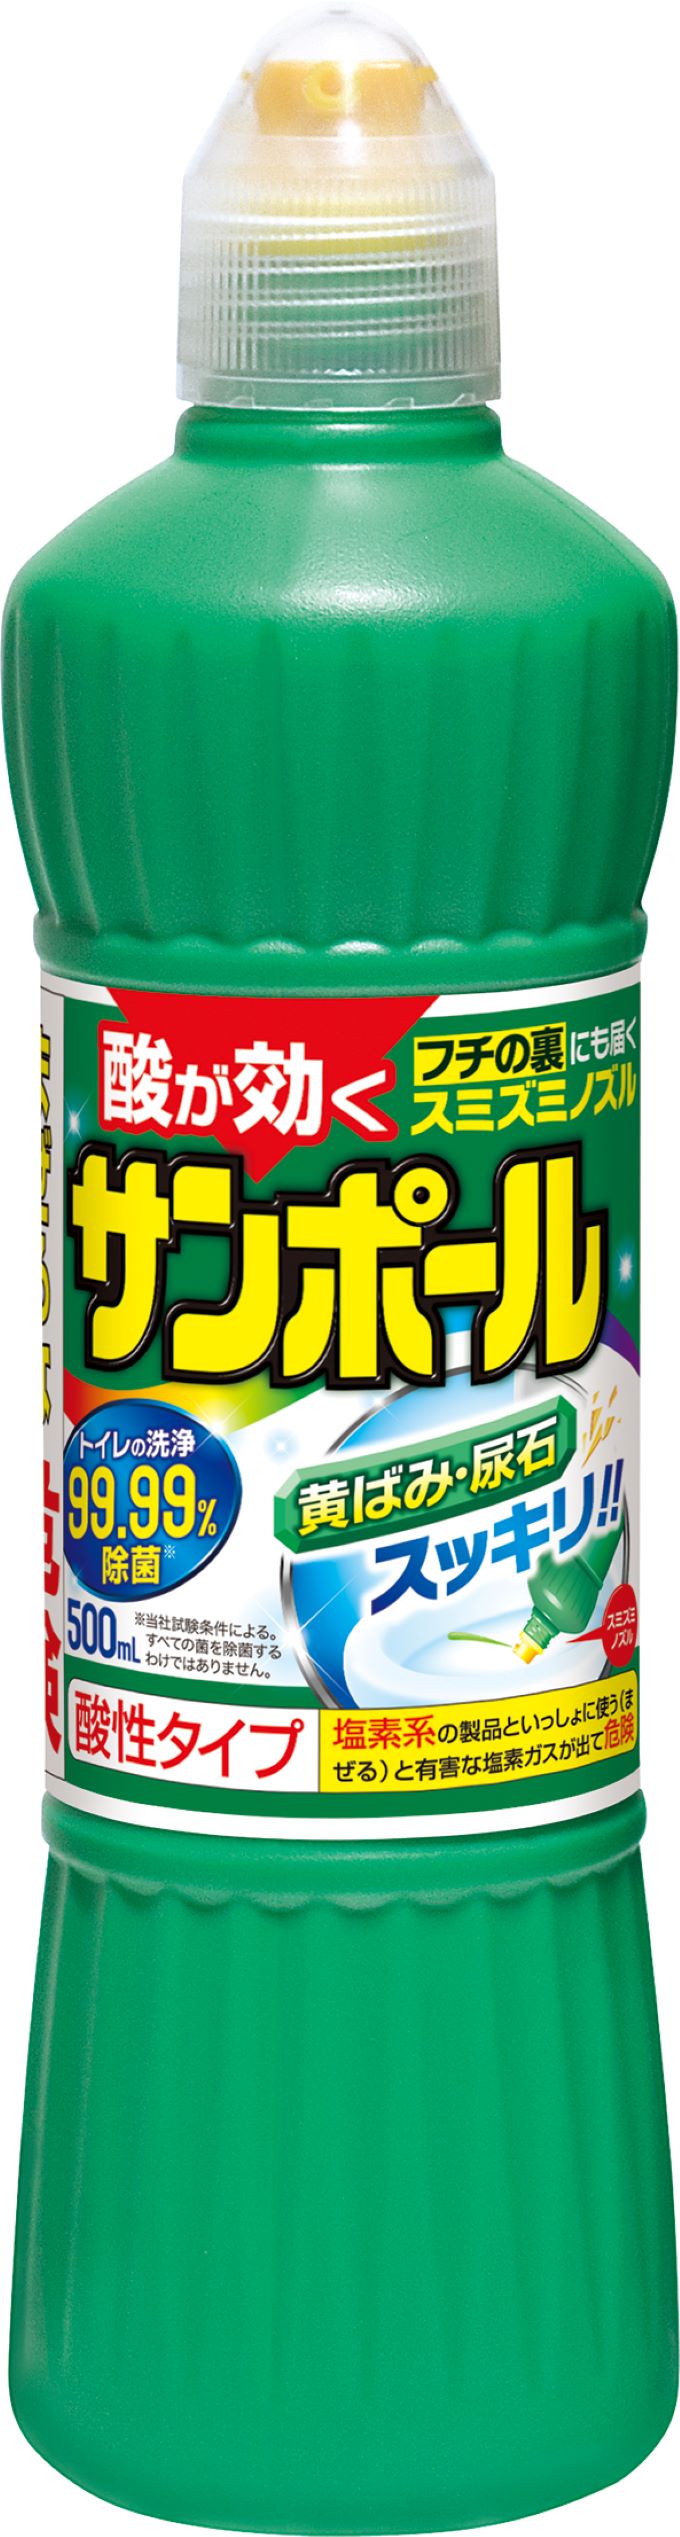 大日本除虫菊 KINCHO サンポール トイレ用洗剤 尿石除去500ml